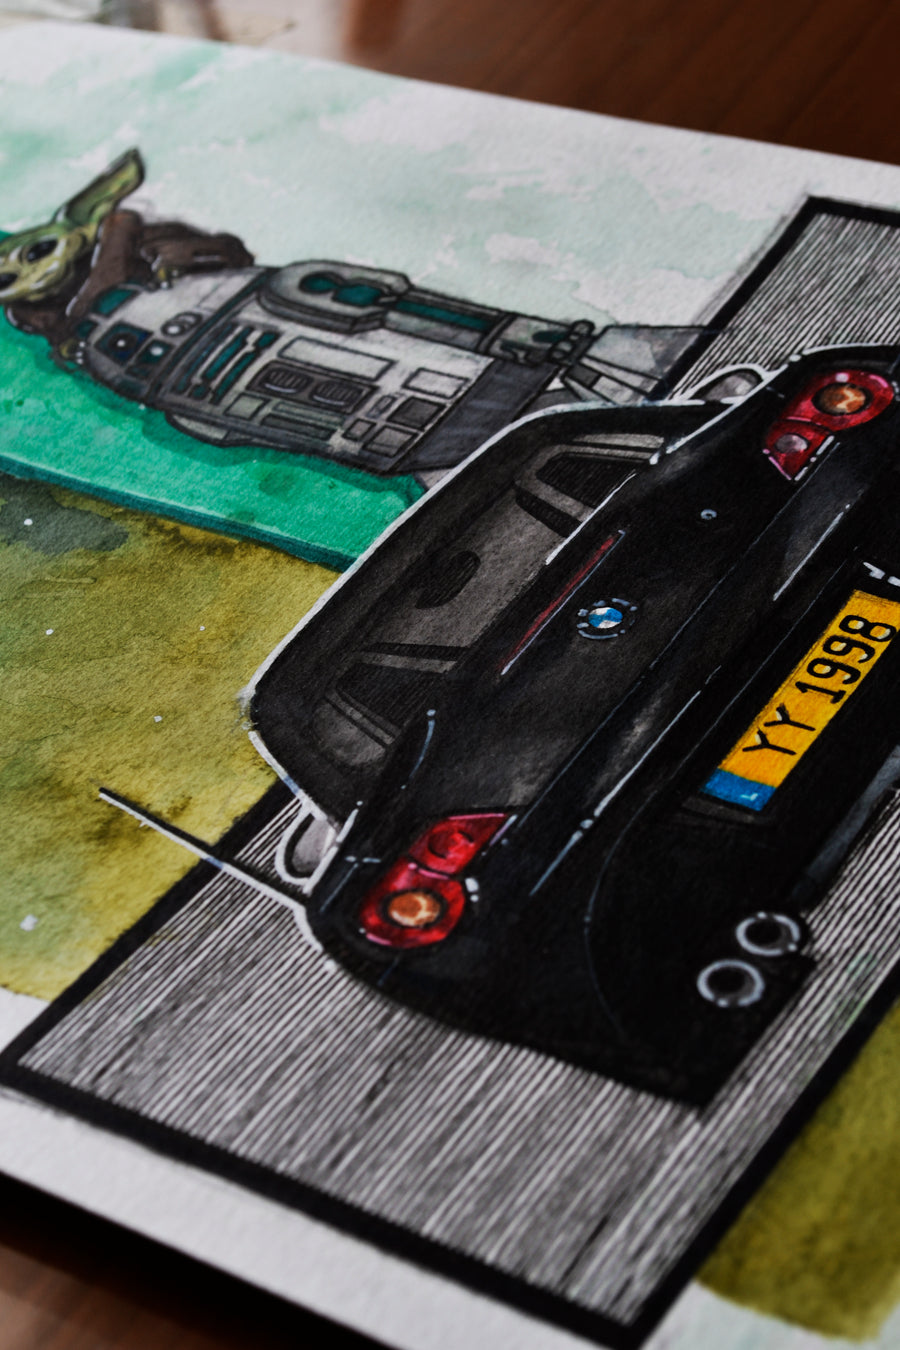 Inspiration from @2joyzi 's BMW Z4/ Handmade Artwork